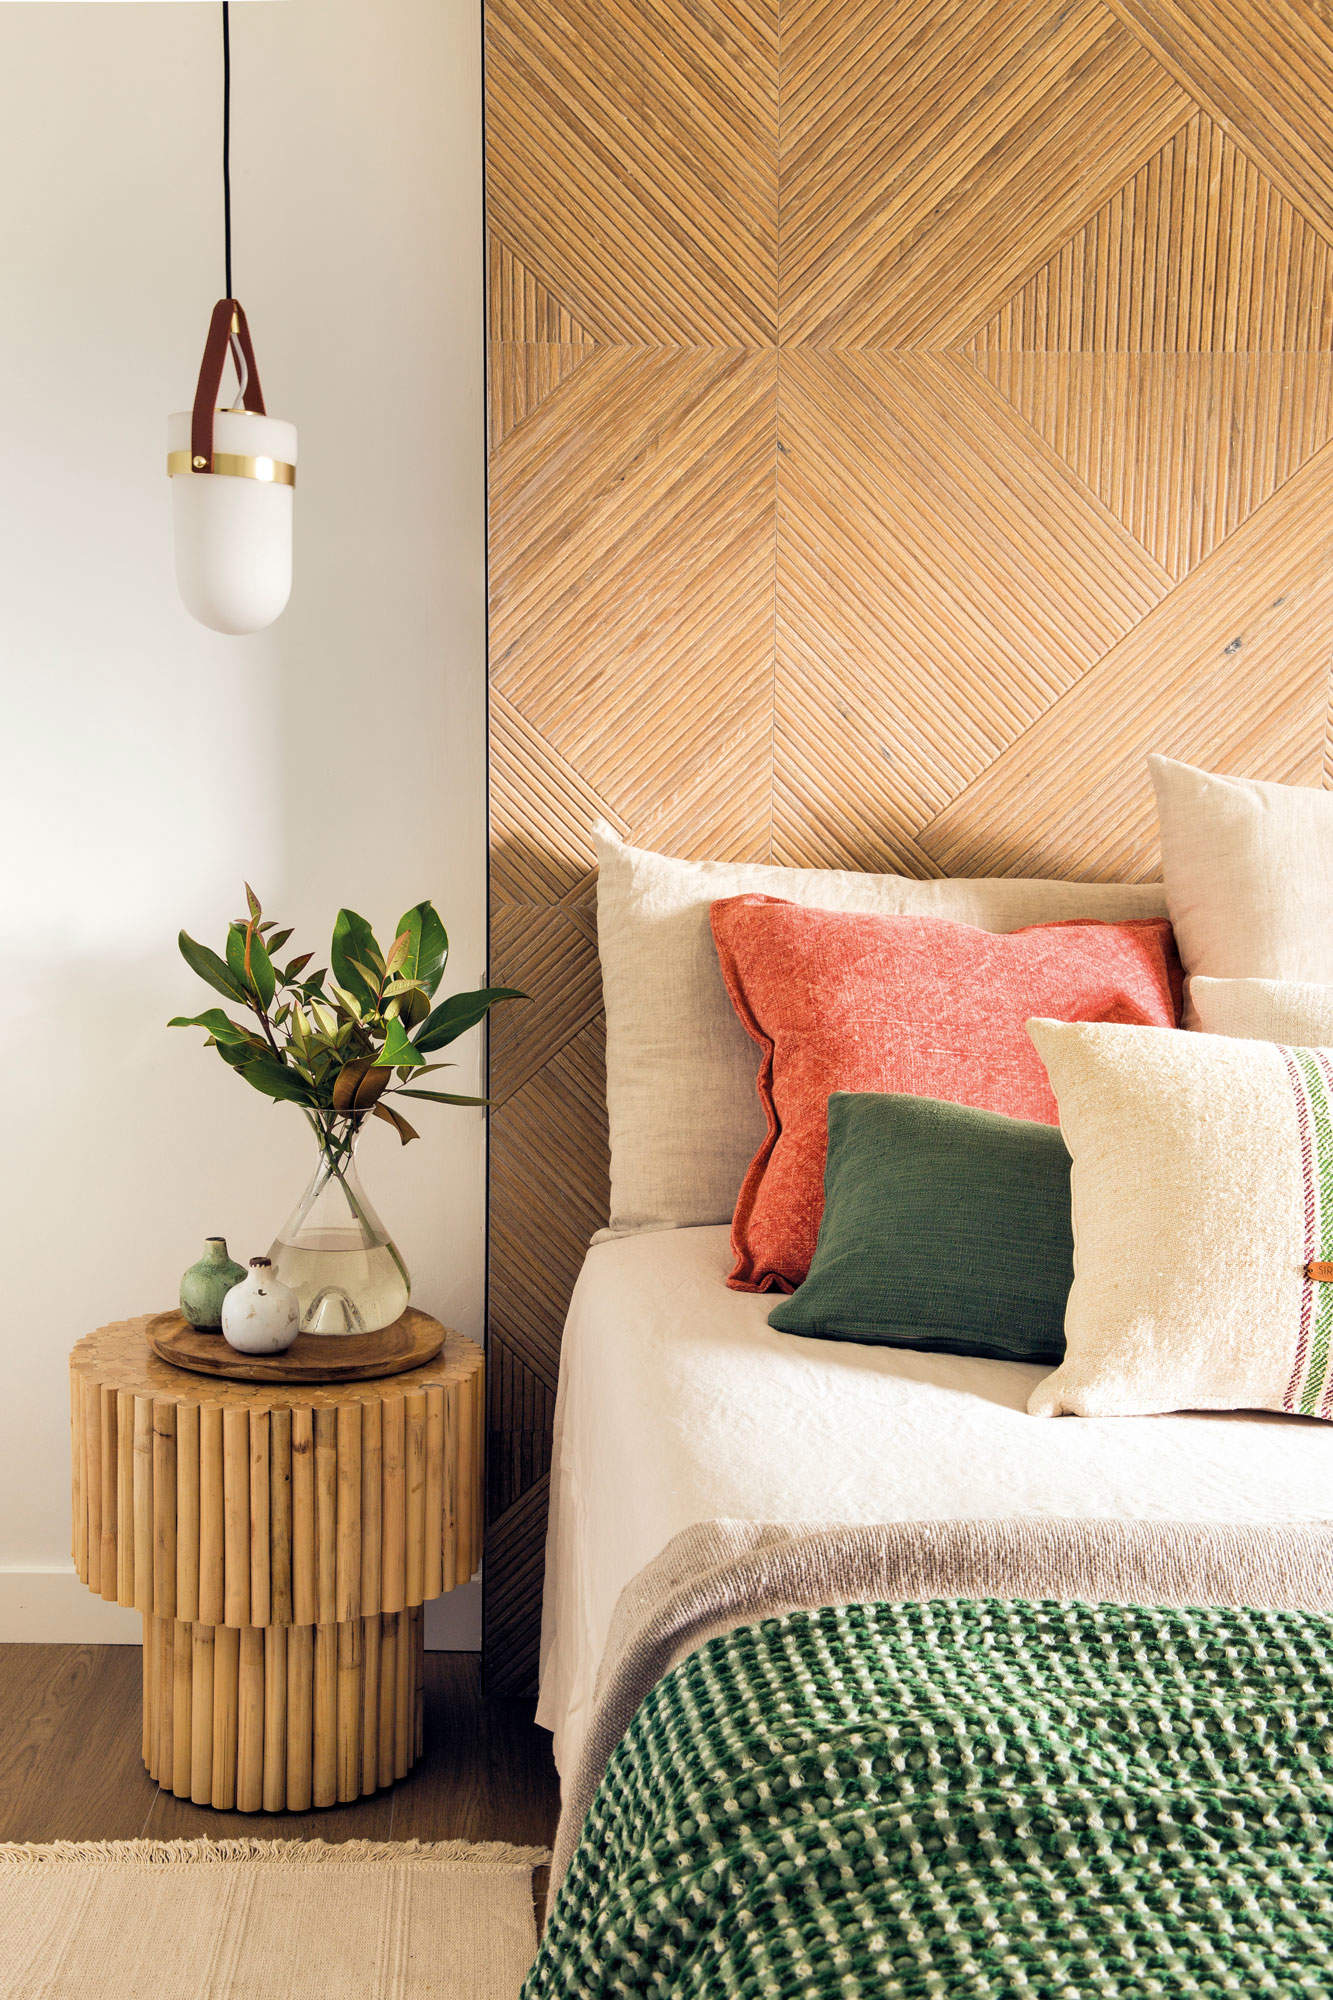 Dormitorio con cabecero porcelánico y taburete de madera a modo de mesilla.